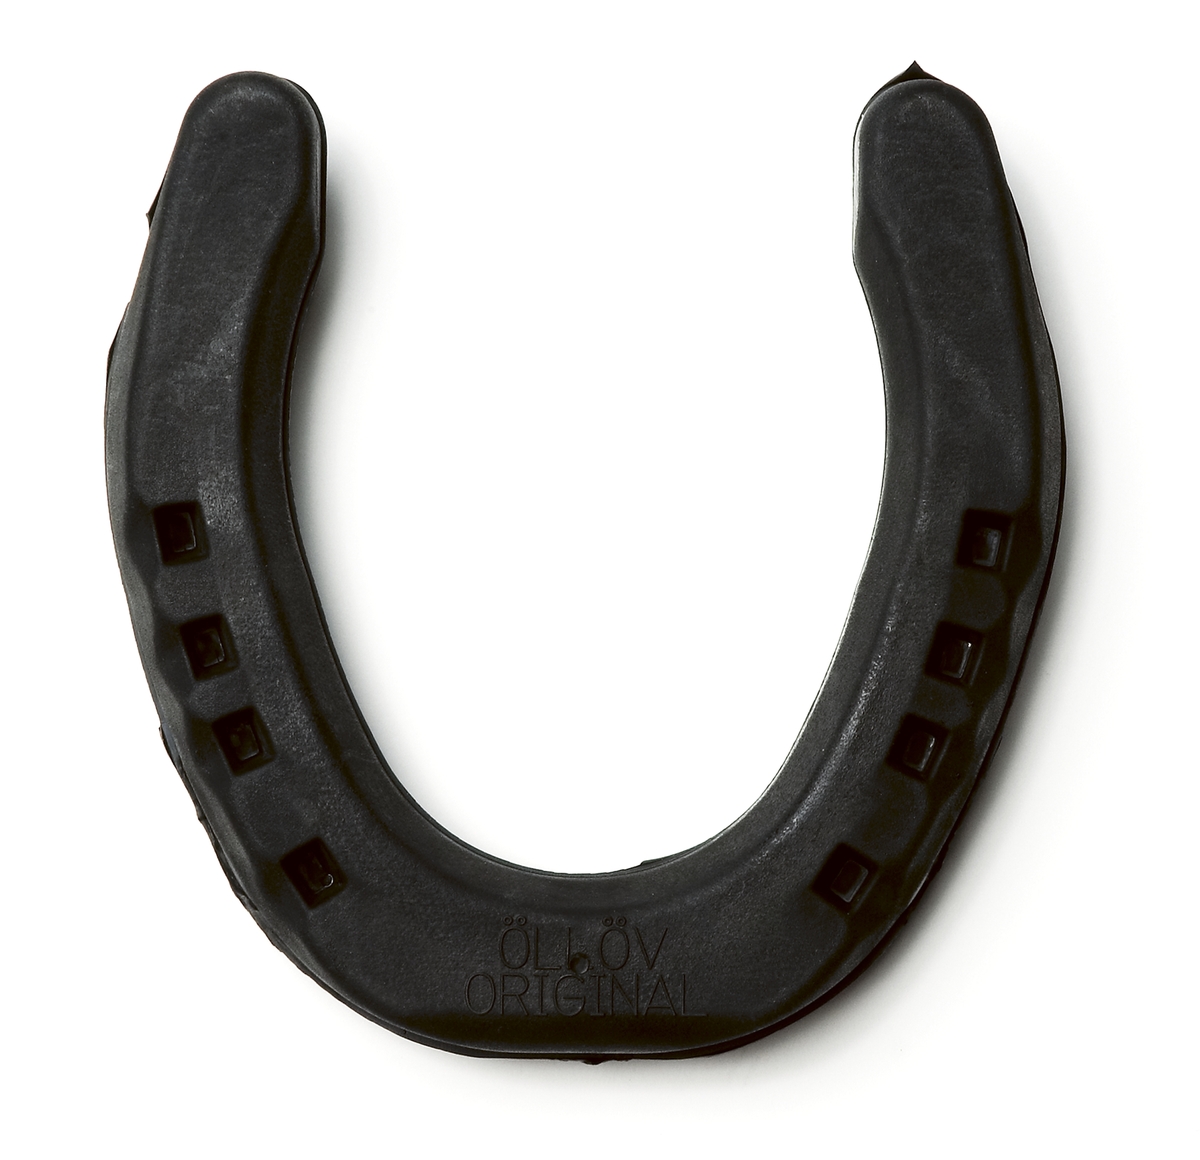 Hästsko, av gummi stål - Tekniska / DigitaltMuseum